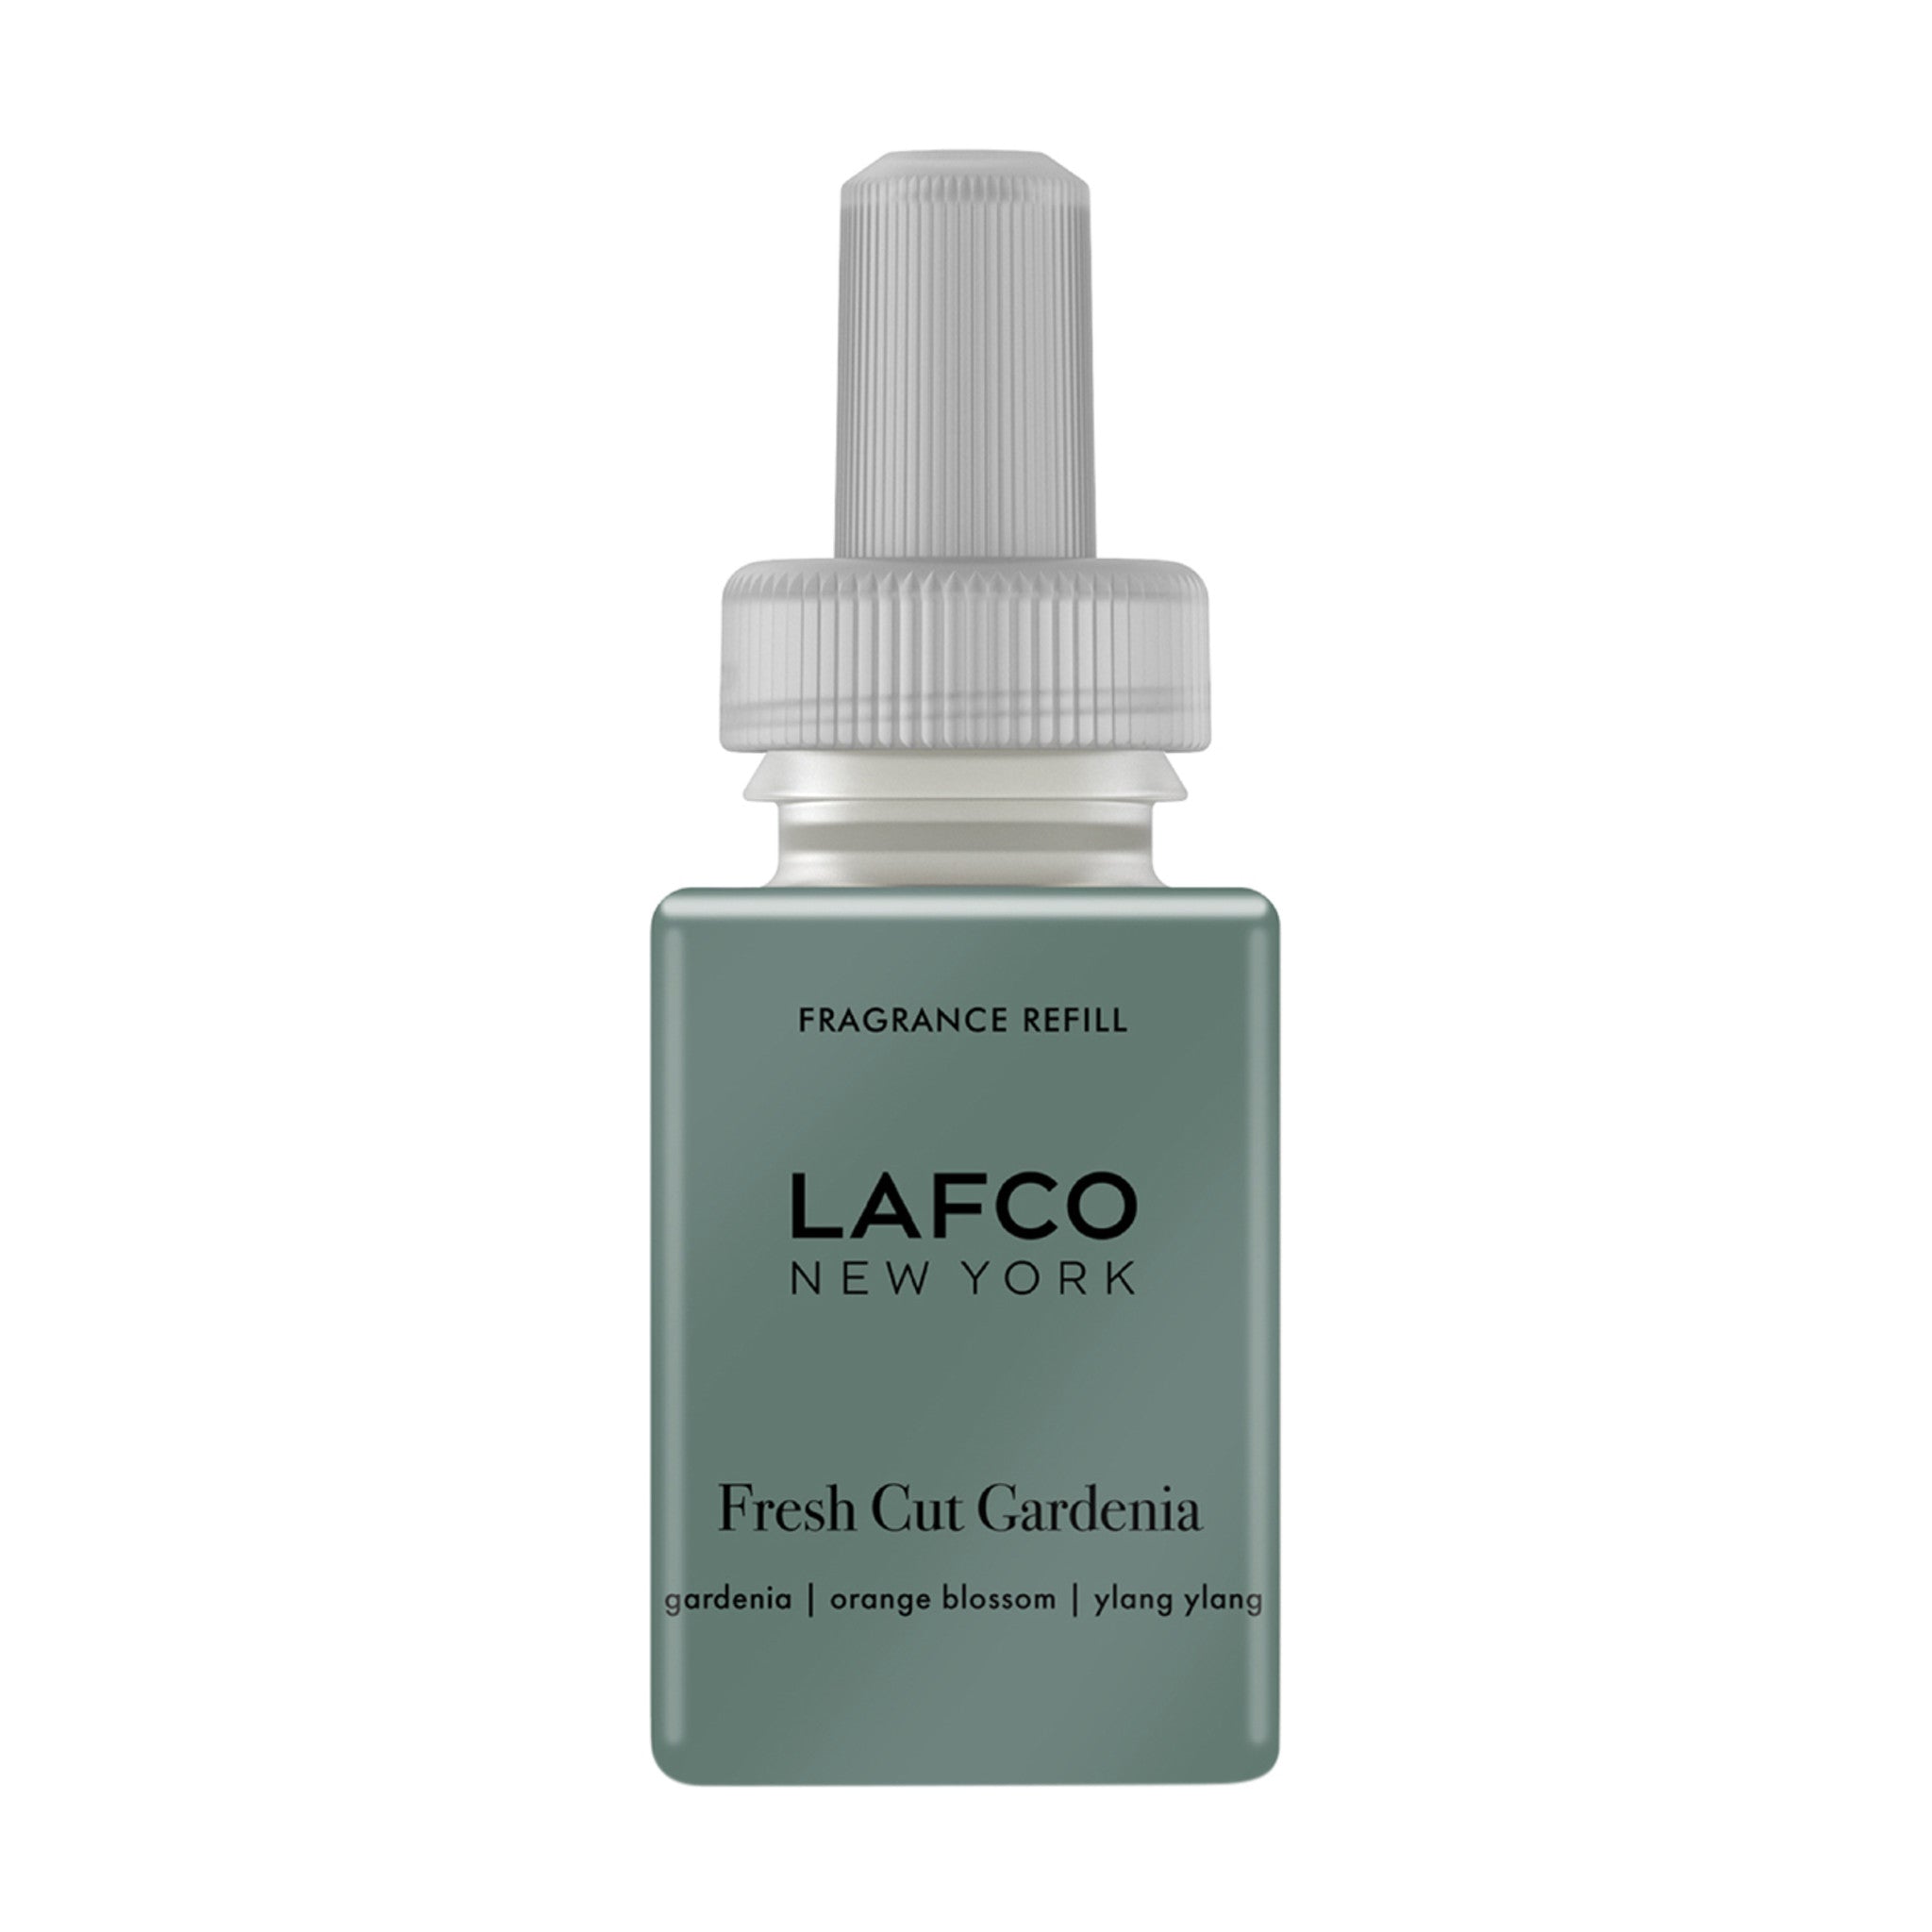 Lafco Smart Diffuser Refill Fresh Cut Gardenia main image.